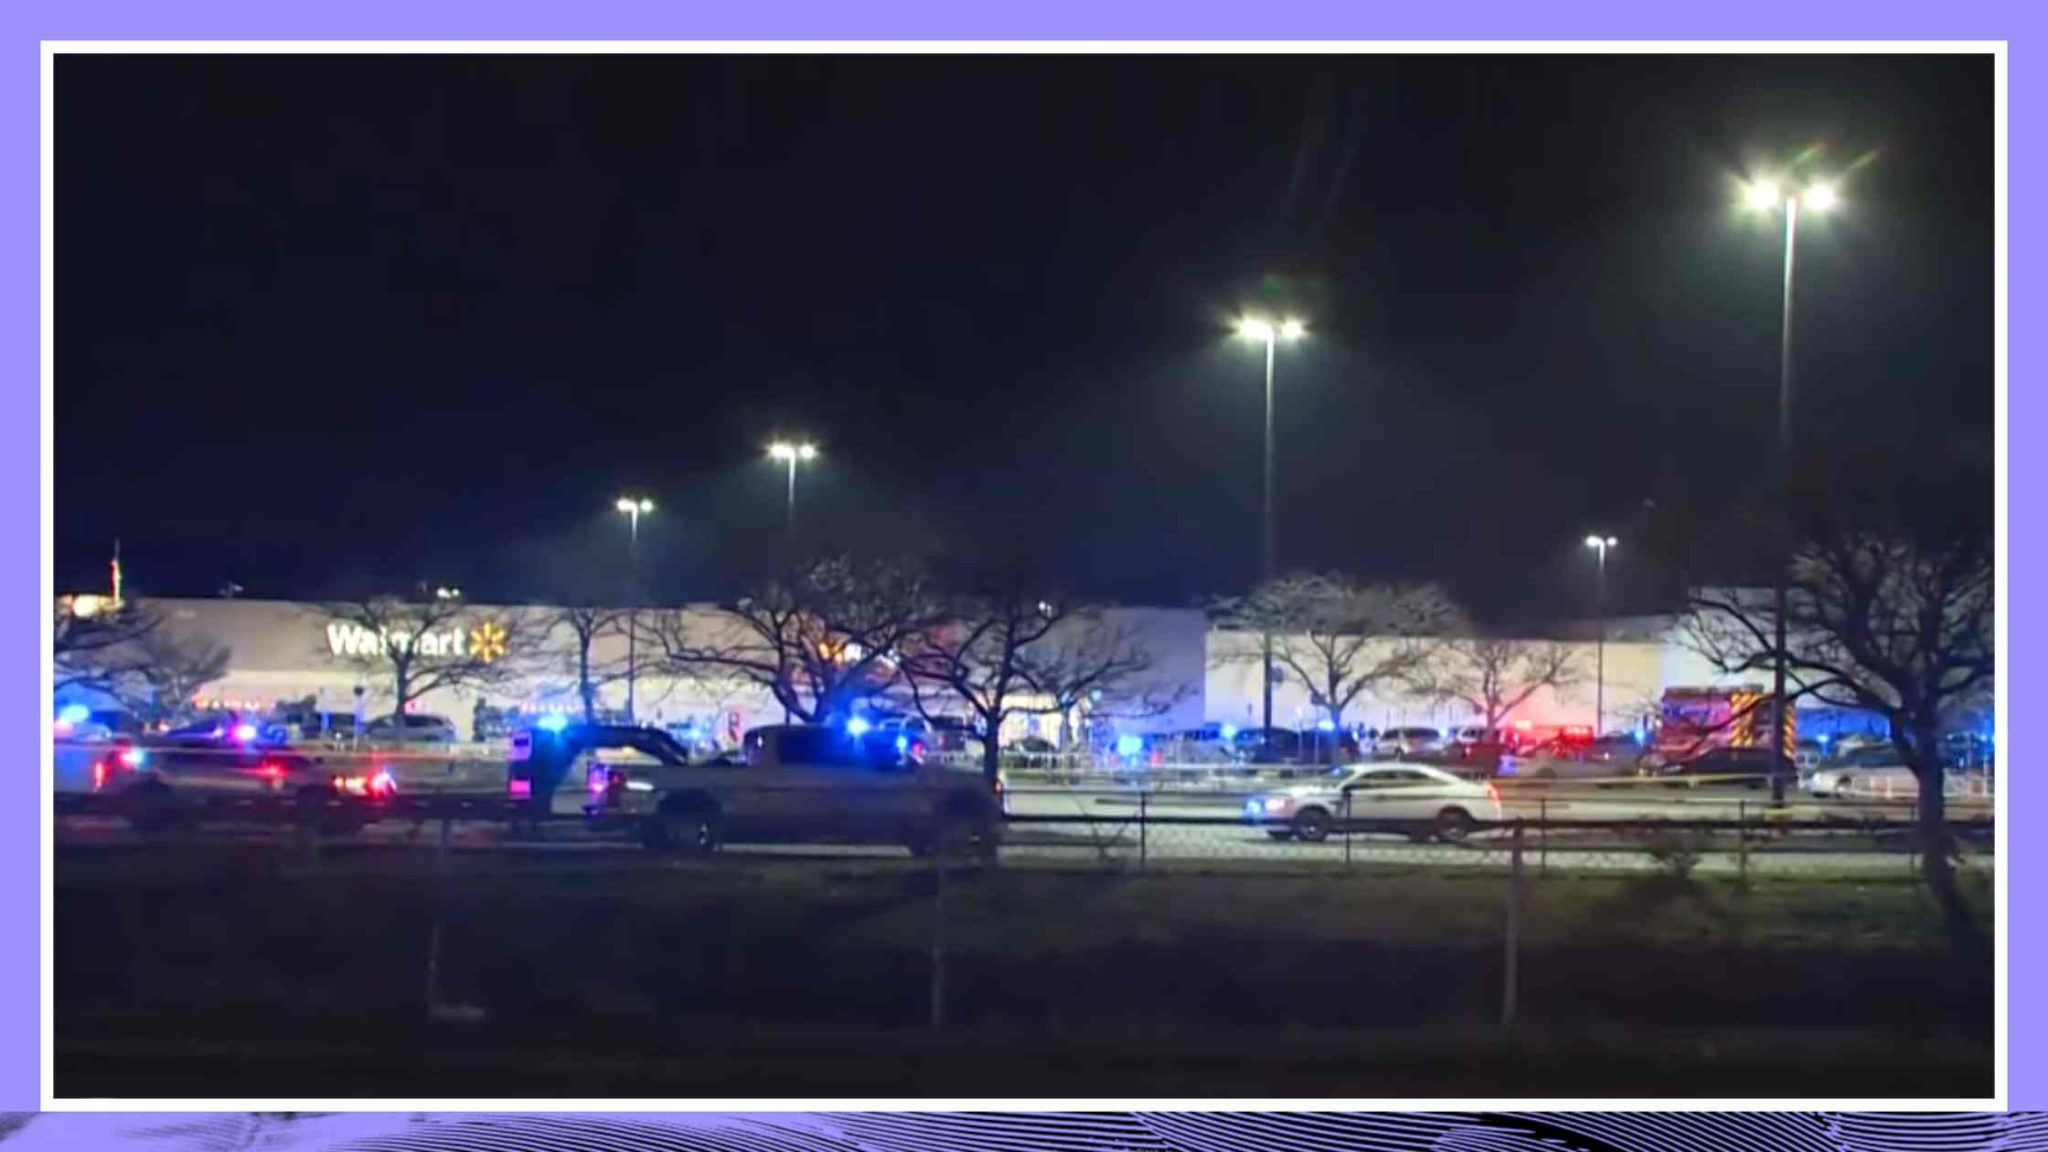 Officials provide an update after deadly Virginia Walmart shooting Transcript